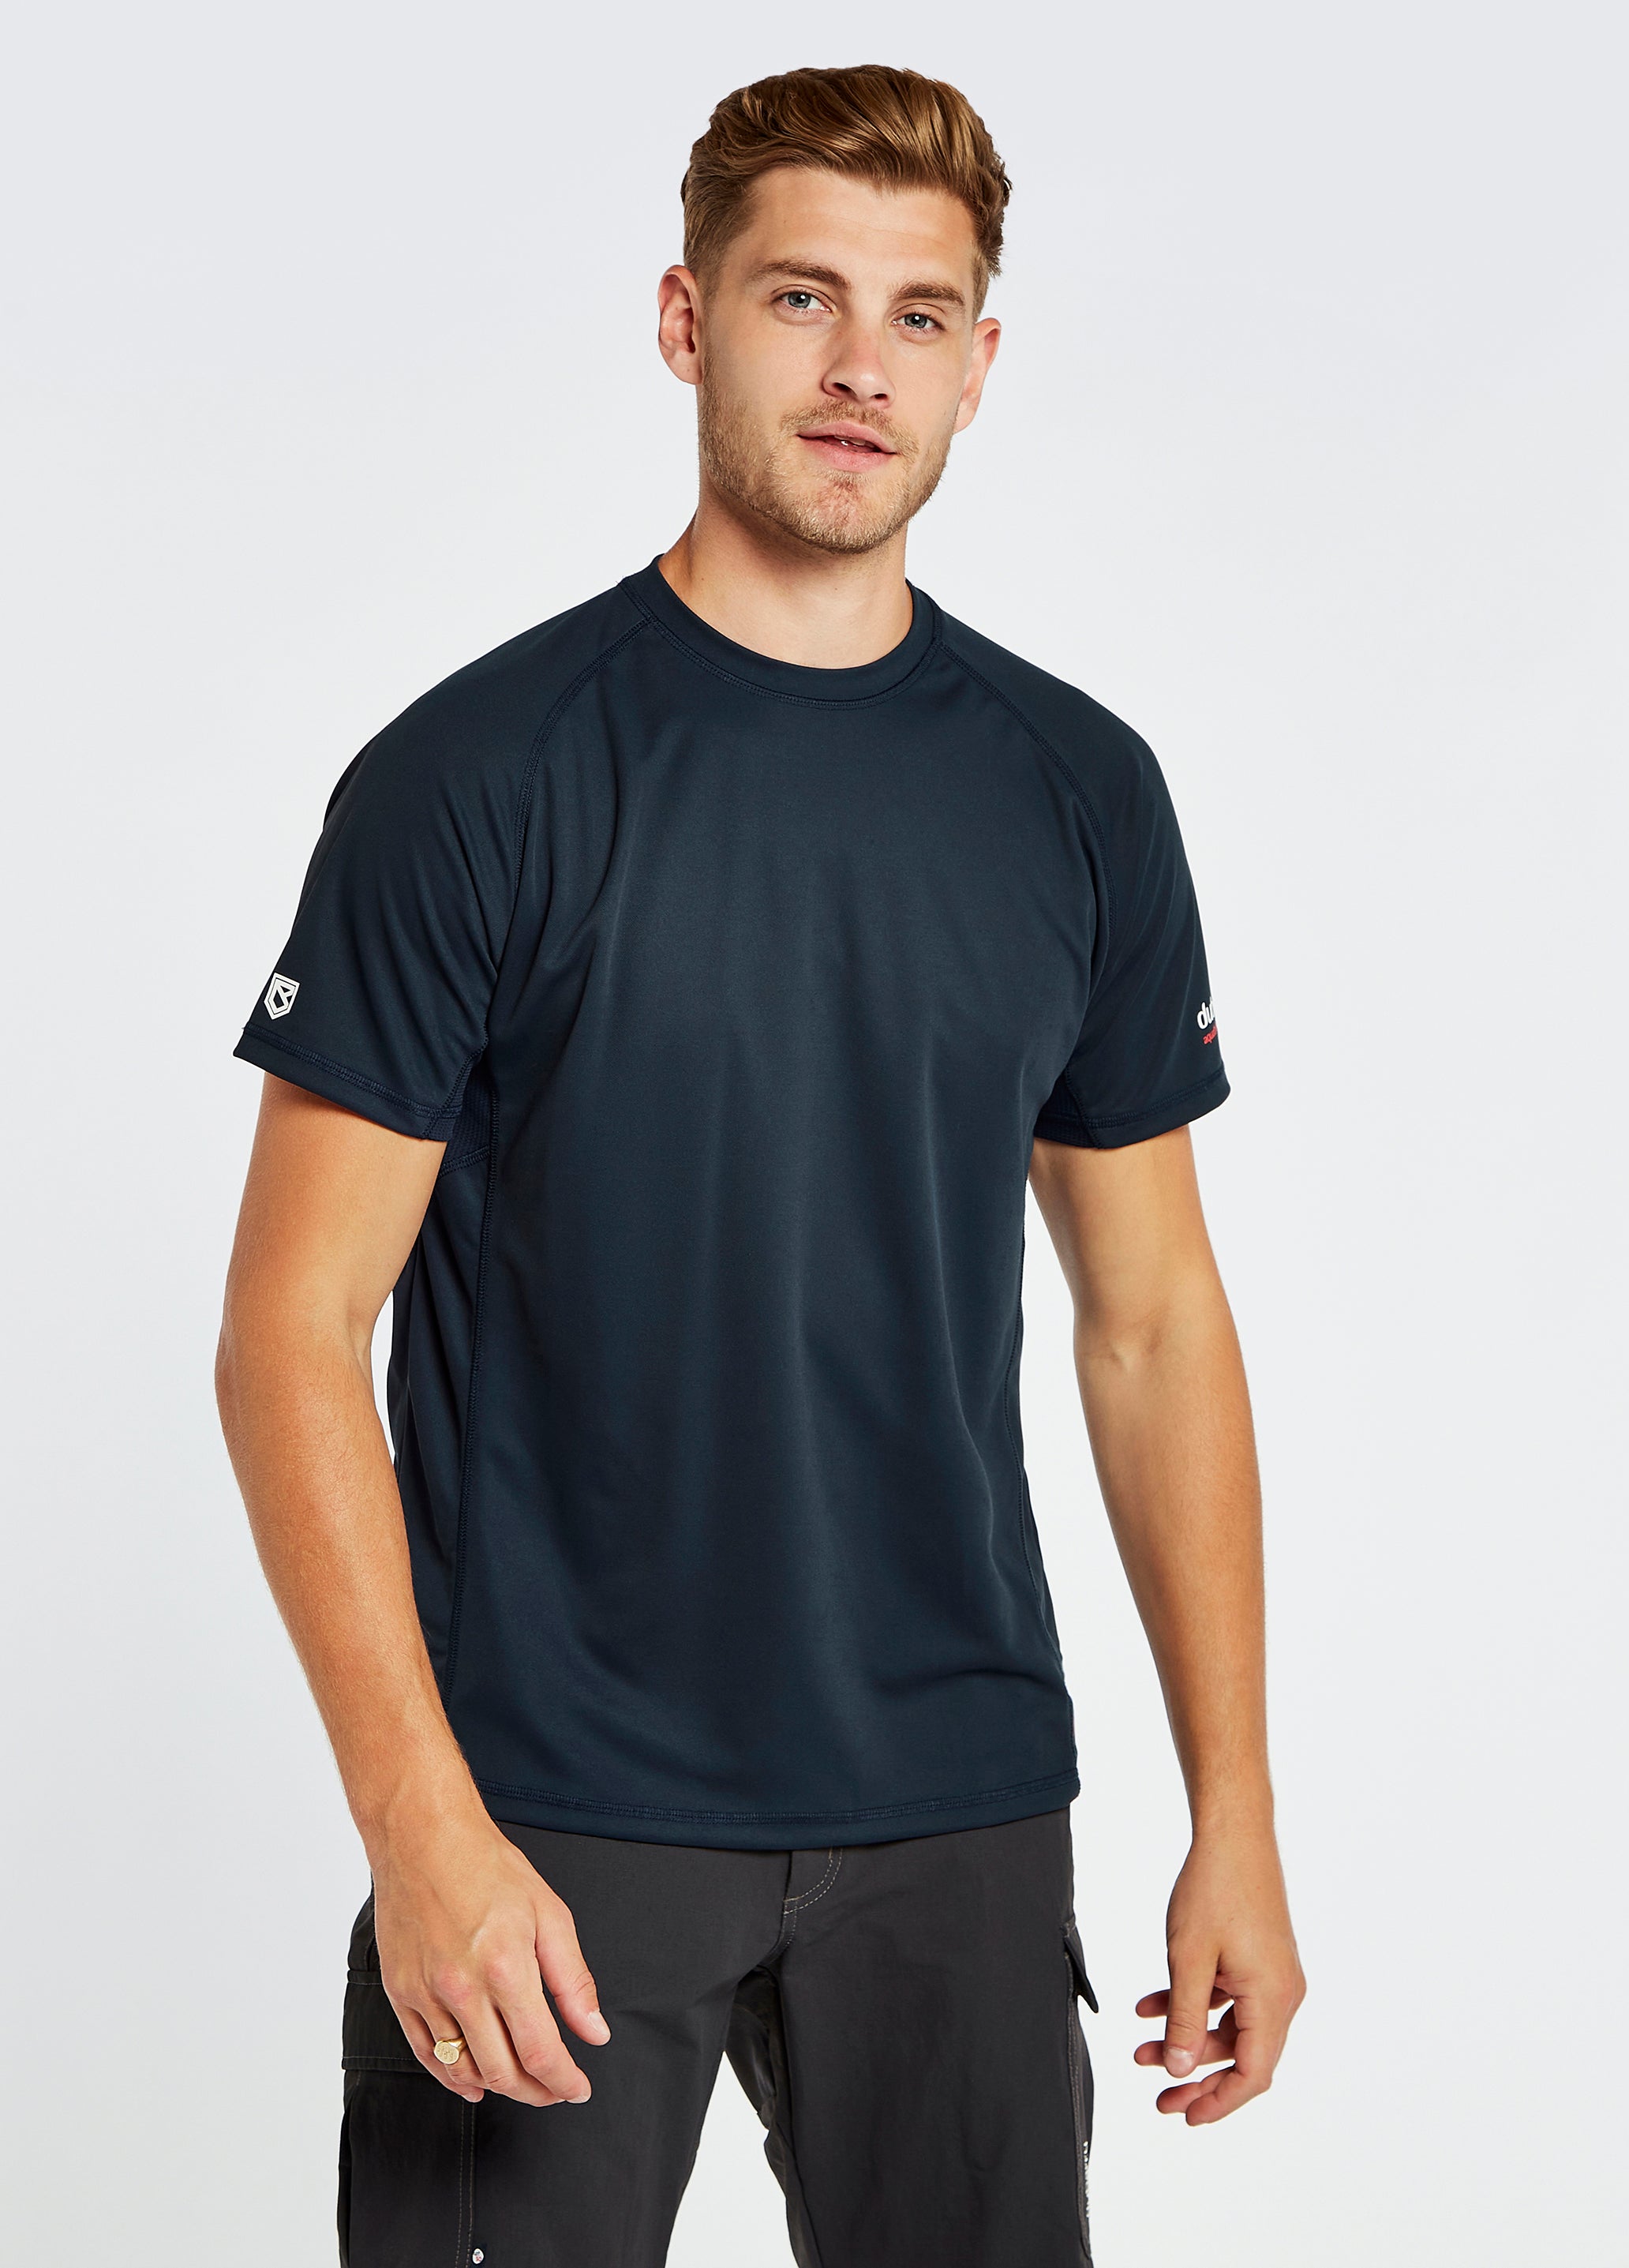 Tangier Men’s Short-Sleeved Technical T-Shirt - Navy – Dubarry Australia